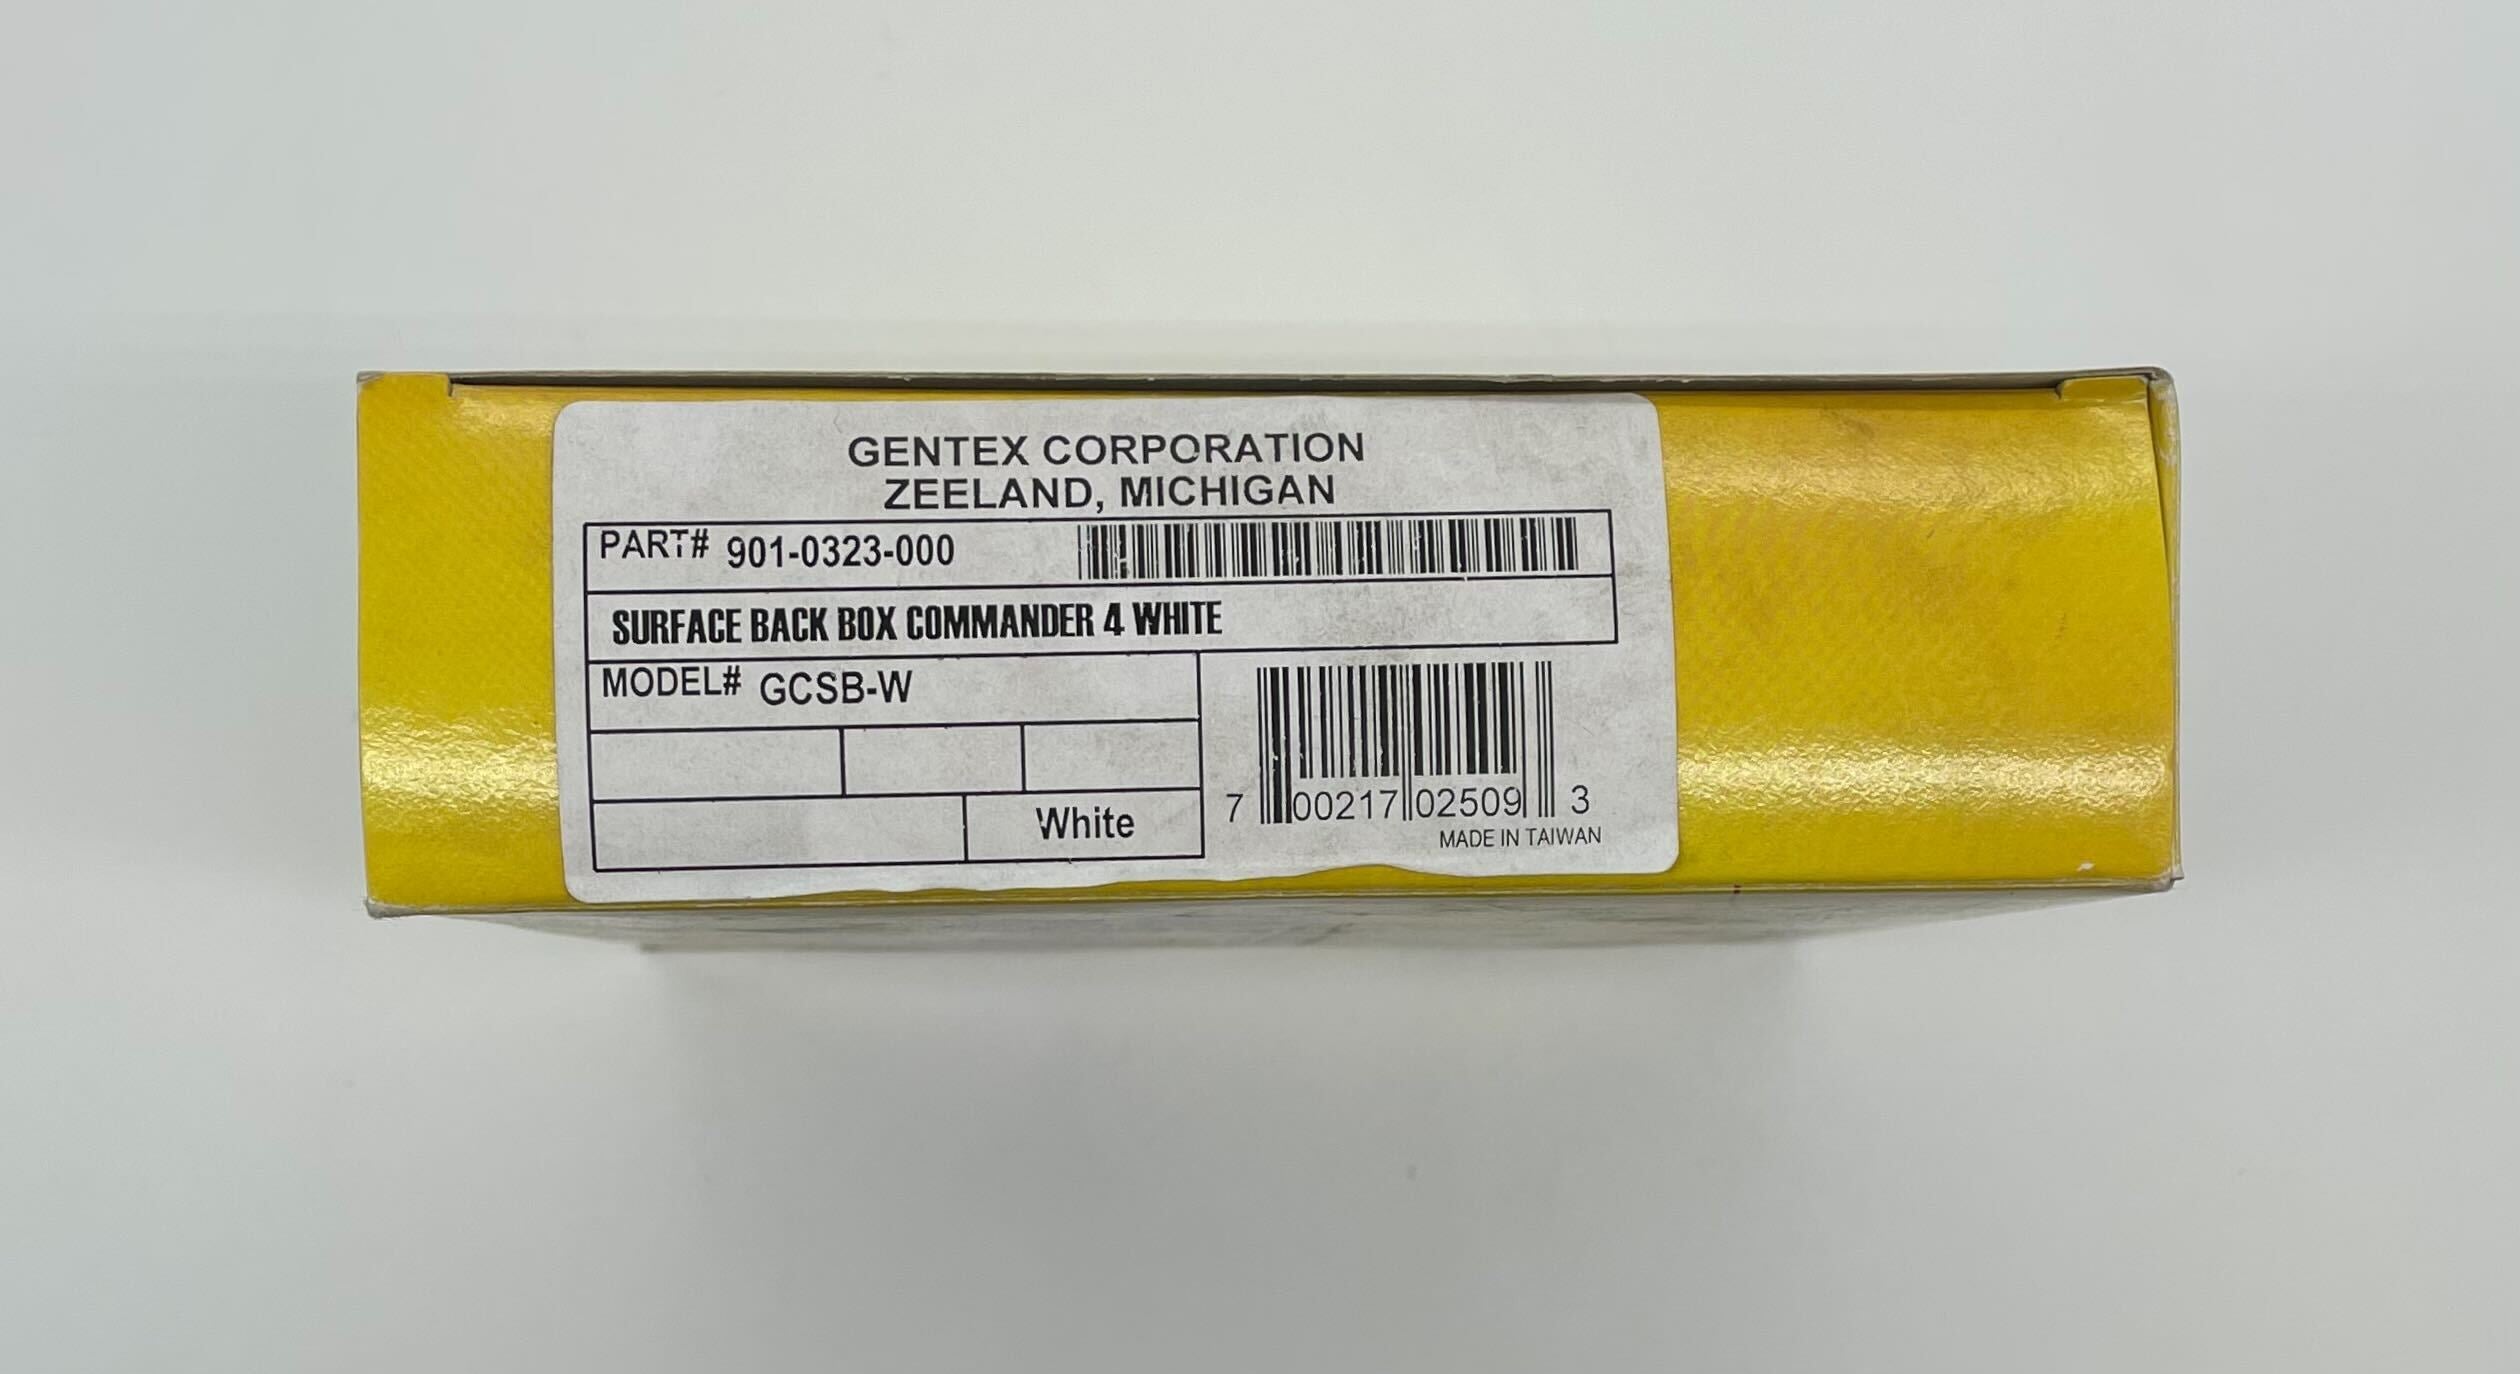 Gentex GCSB-W